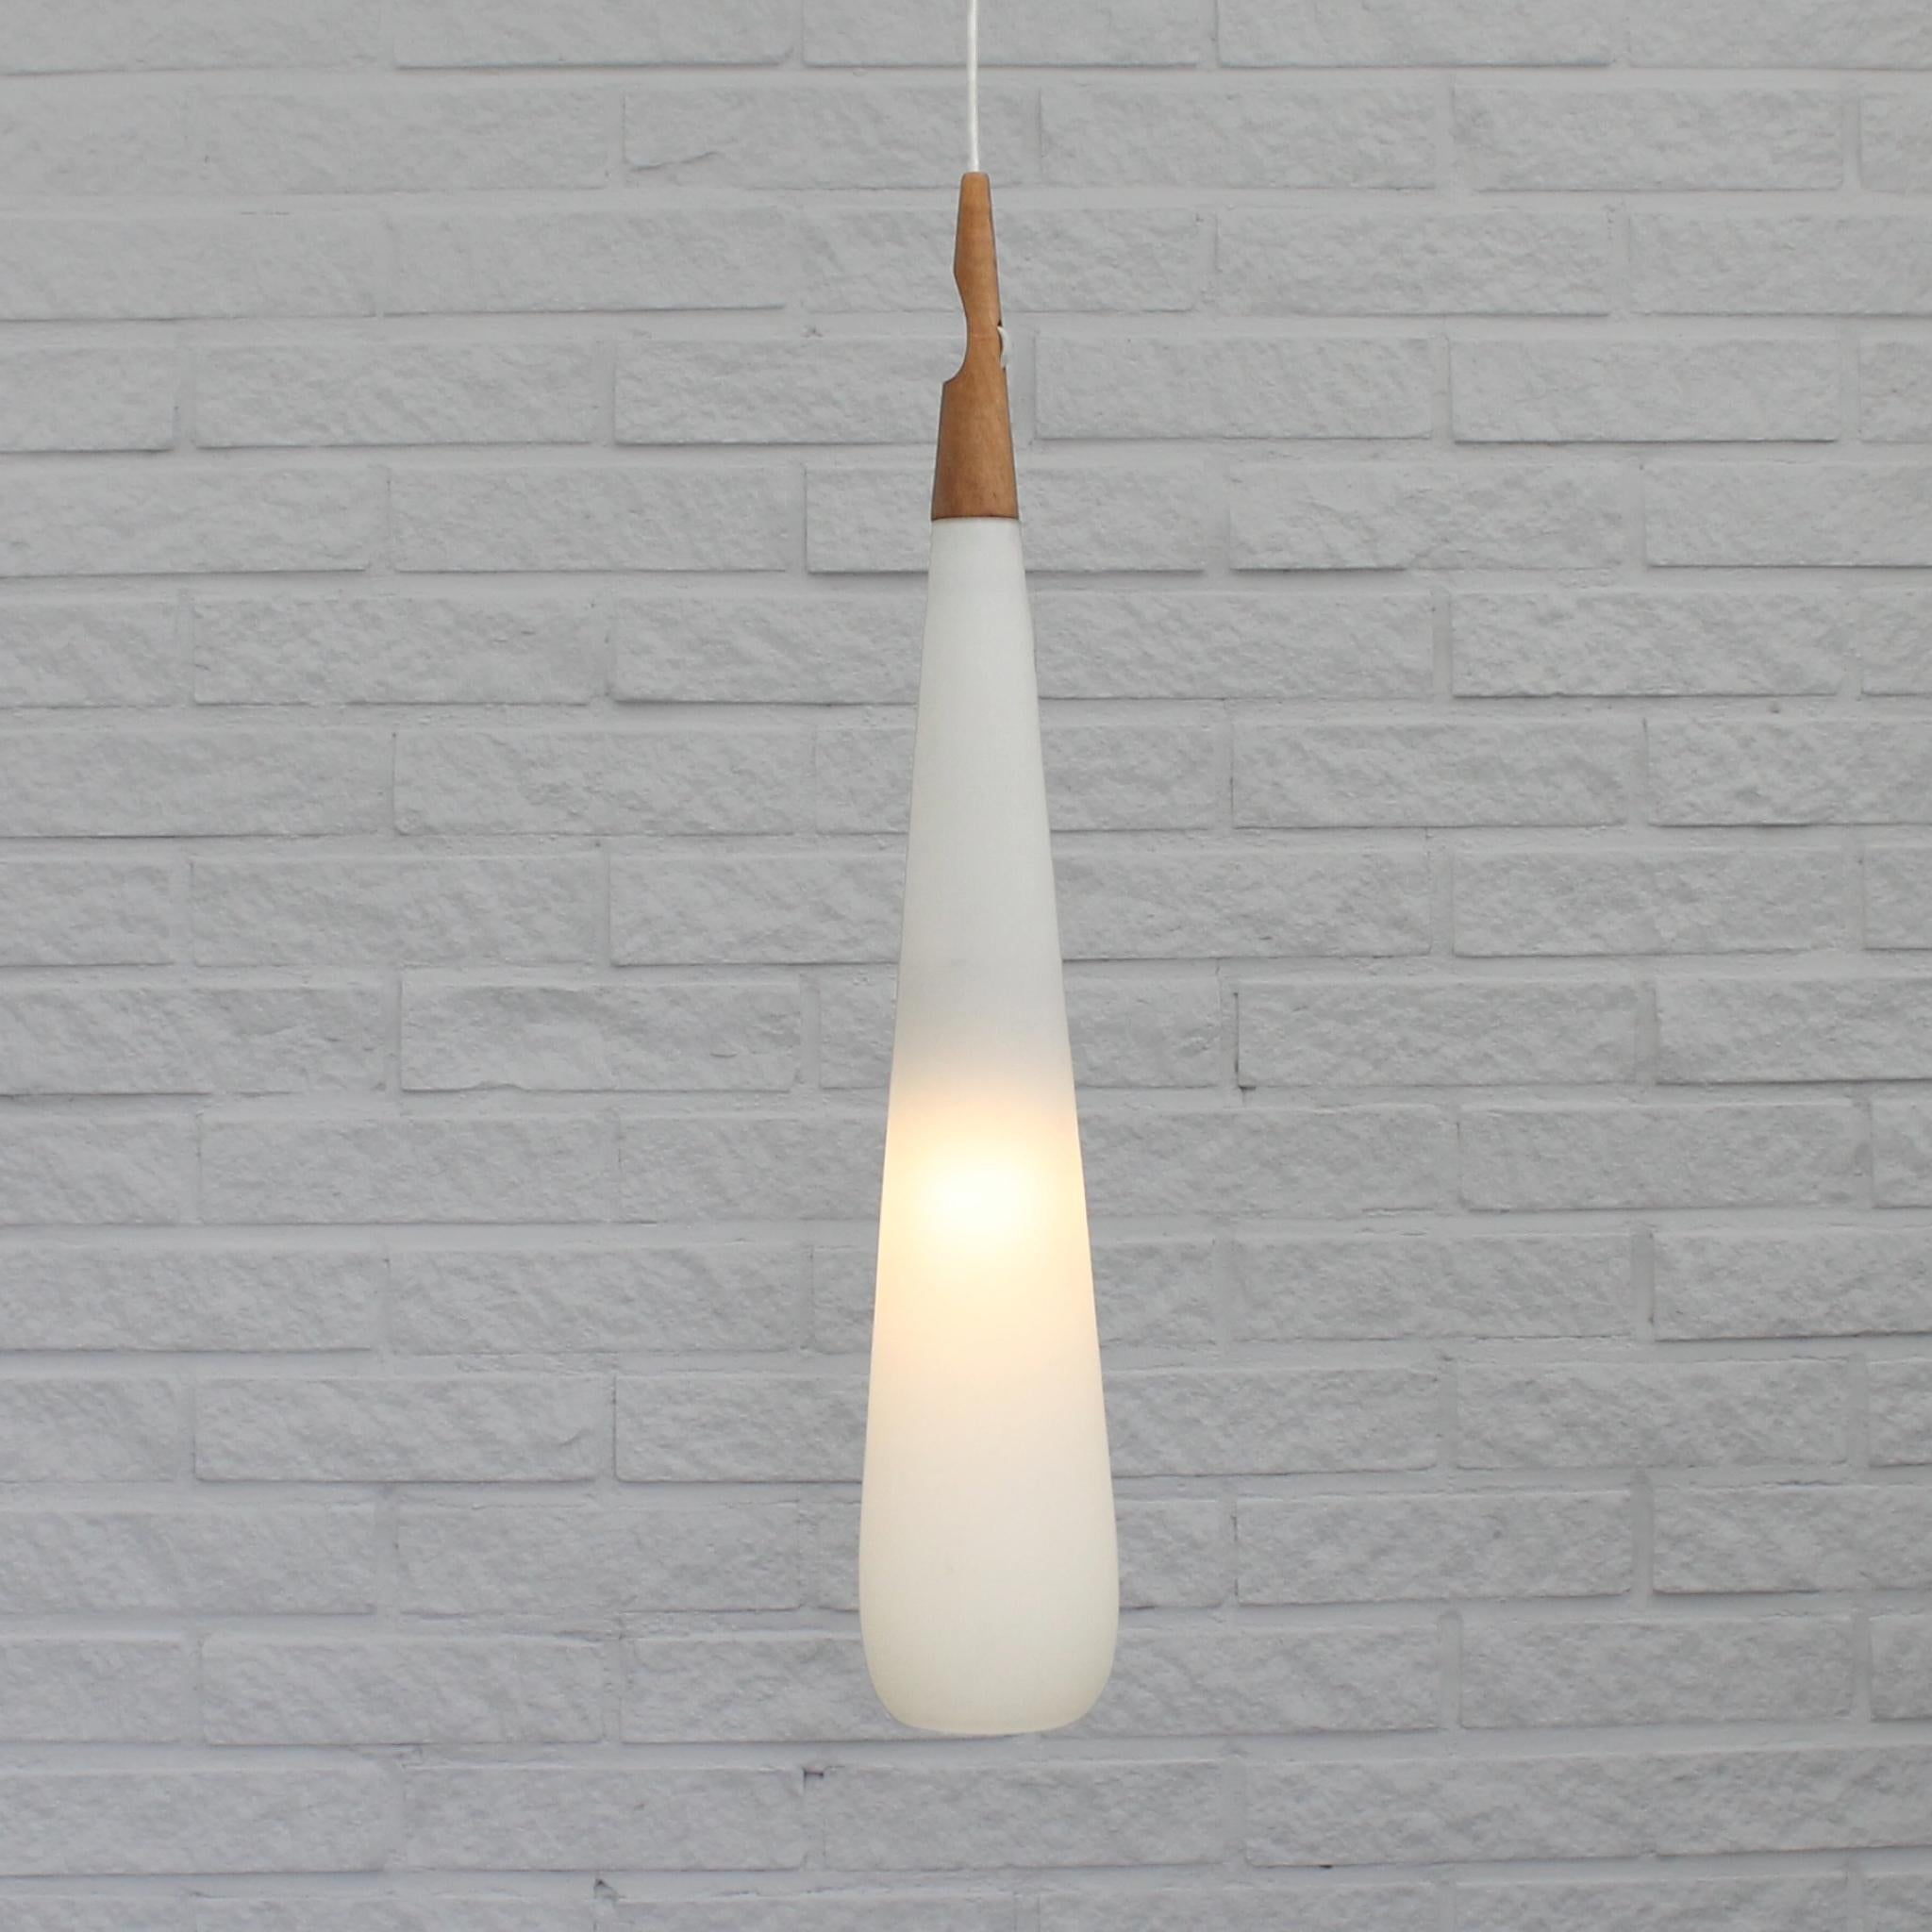 Grande lampe suspendue en forme de goutte, modèle 546 'Baton', conçue par les frères suédois Uno & Östen Kristiansson pour Luxus à Vittsjö. Elle est dotée d'un abat-jour en verre opalin allongé et d'une fixation en bois avec un raccourcisseur de